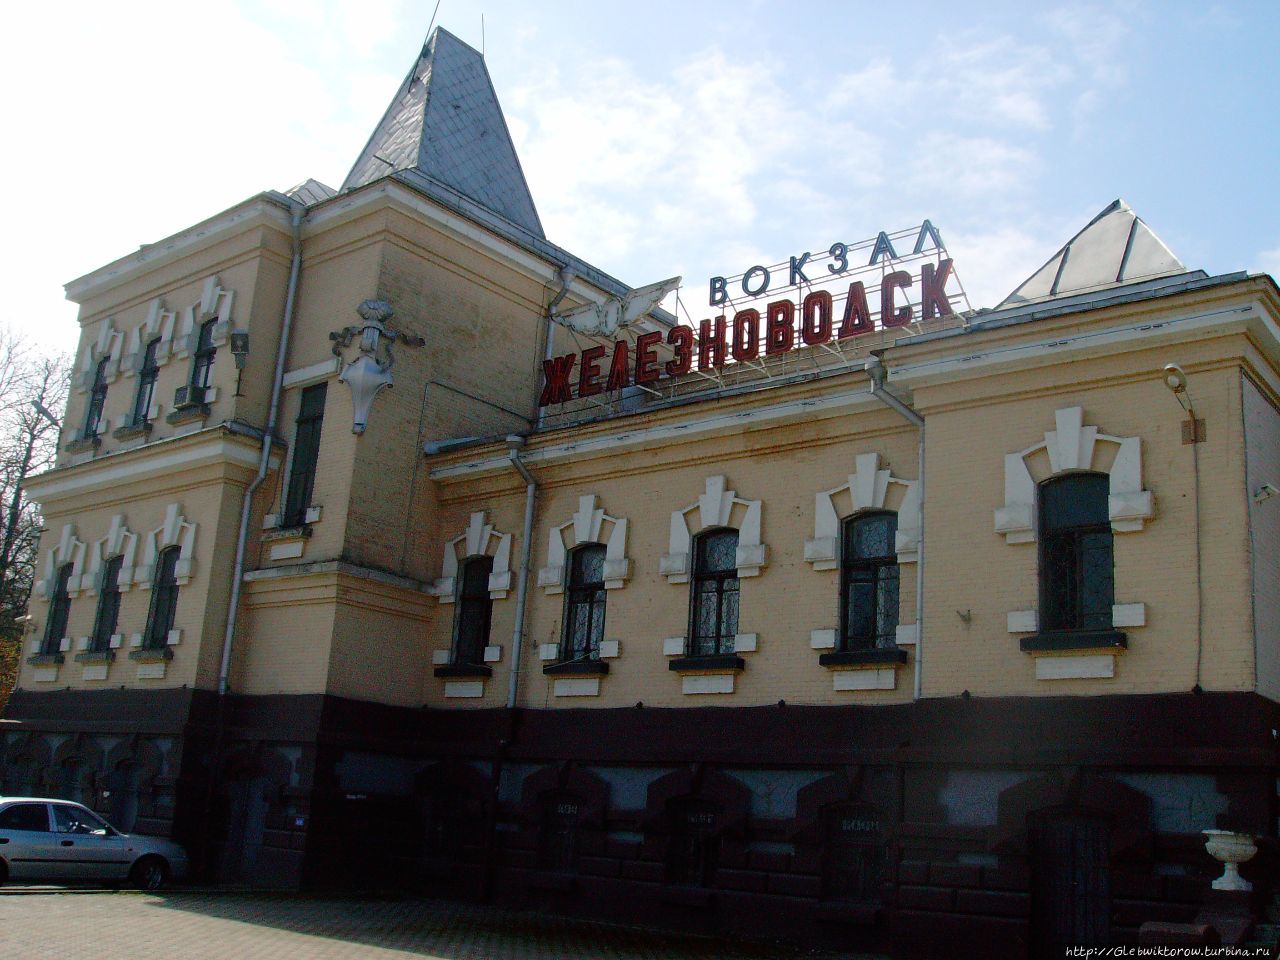 Поездка в Железноводск в середине апреля Железноводск, Россия